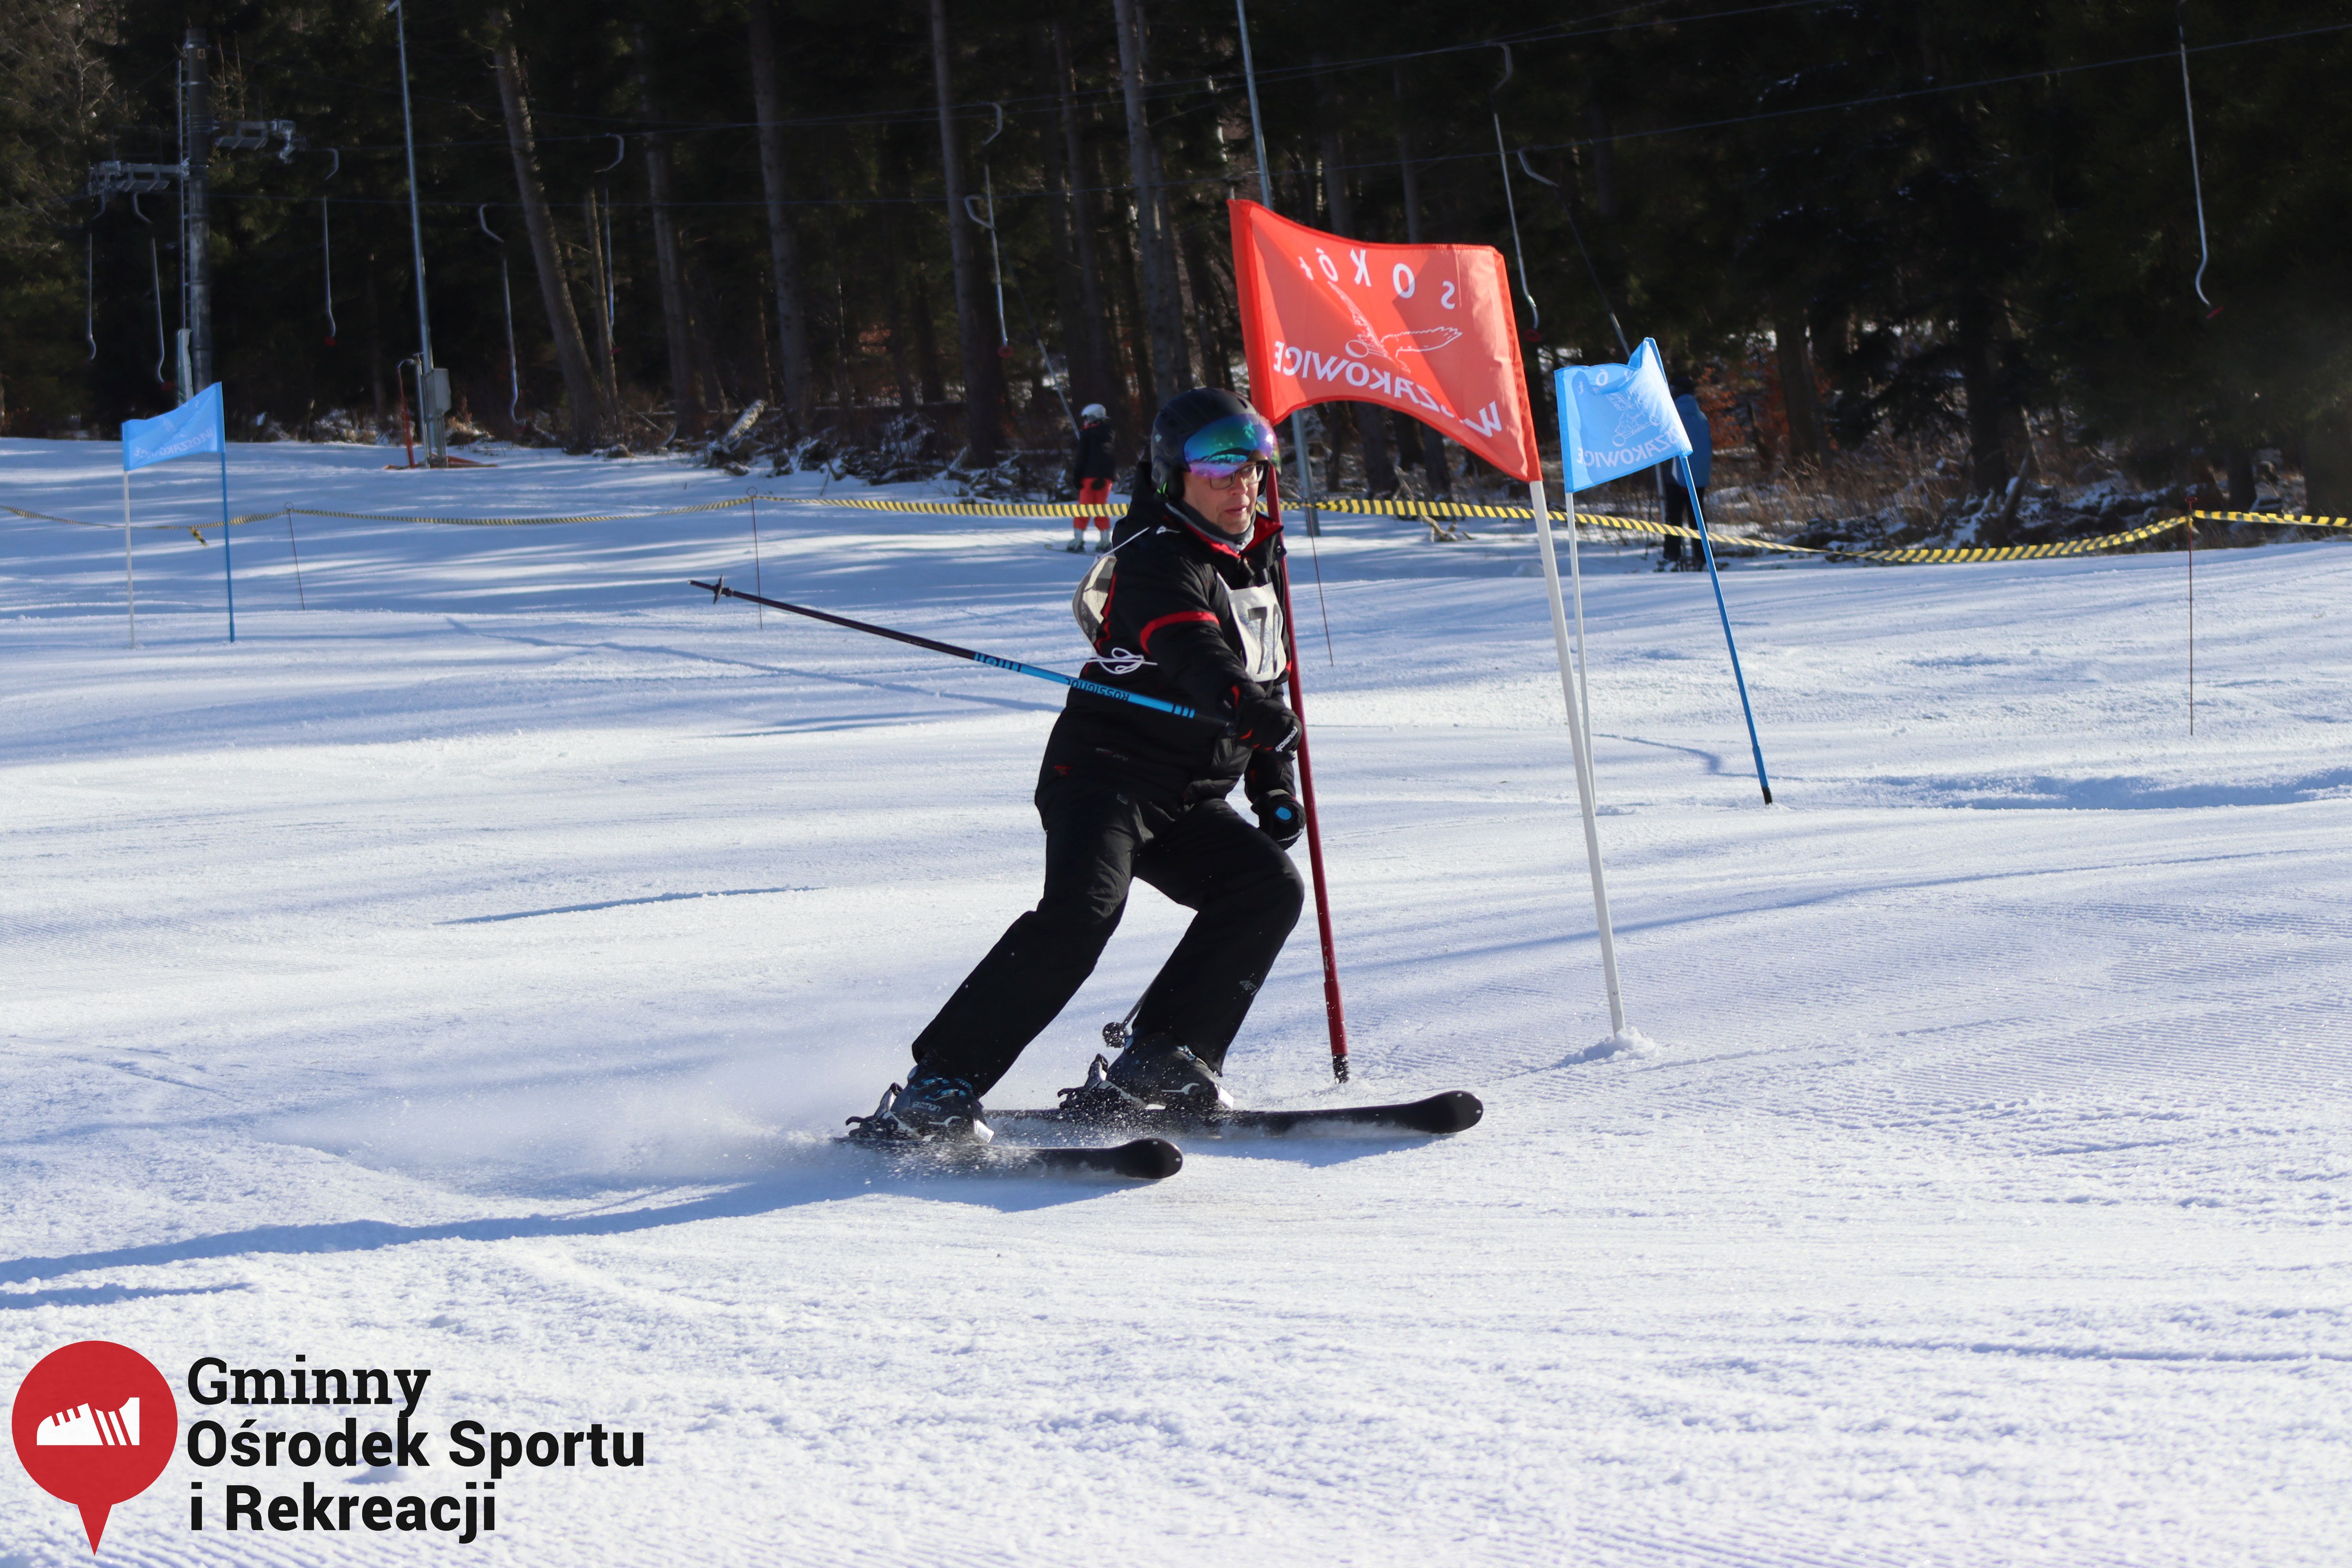 2022.02.12 - 18. Mistrzostwa Gminy Woszakowice w narciarstwie071.jpg - 2,27 MB